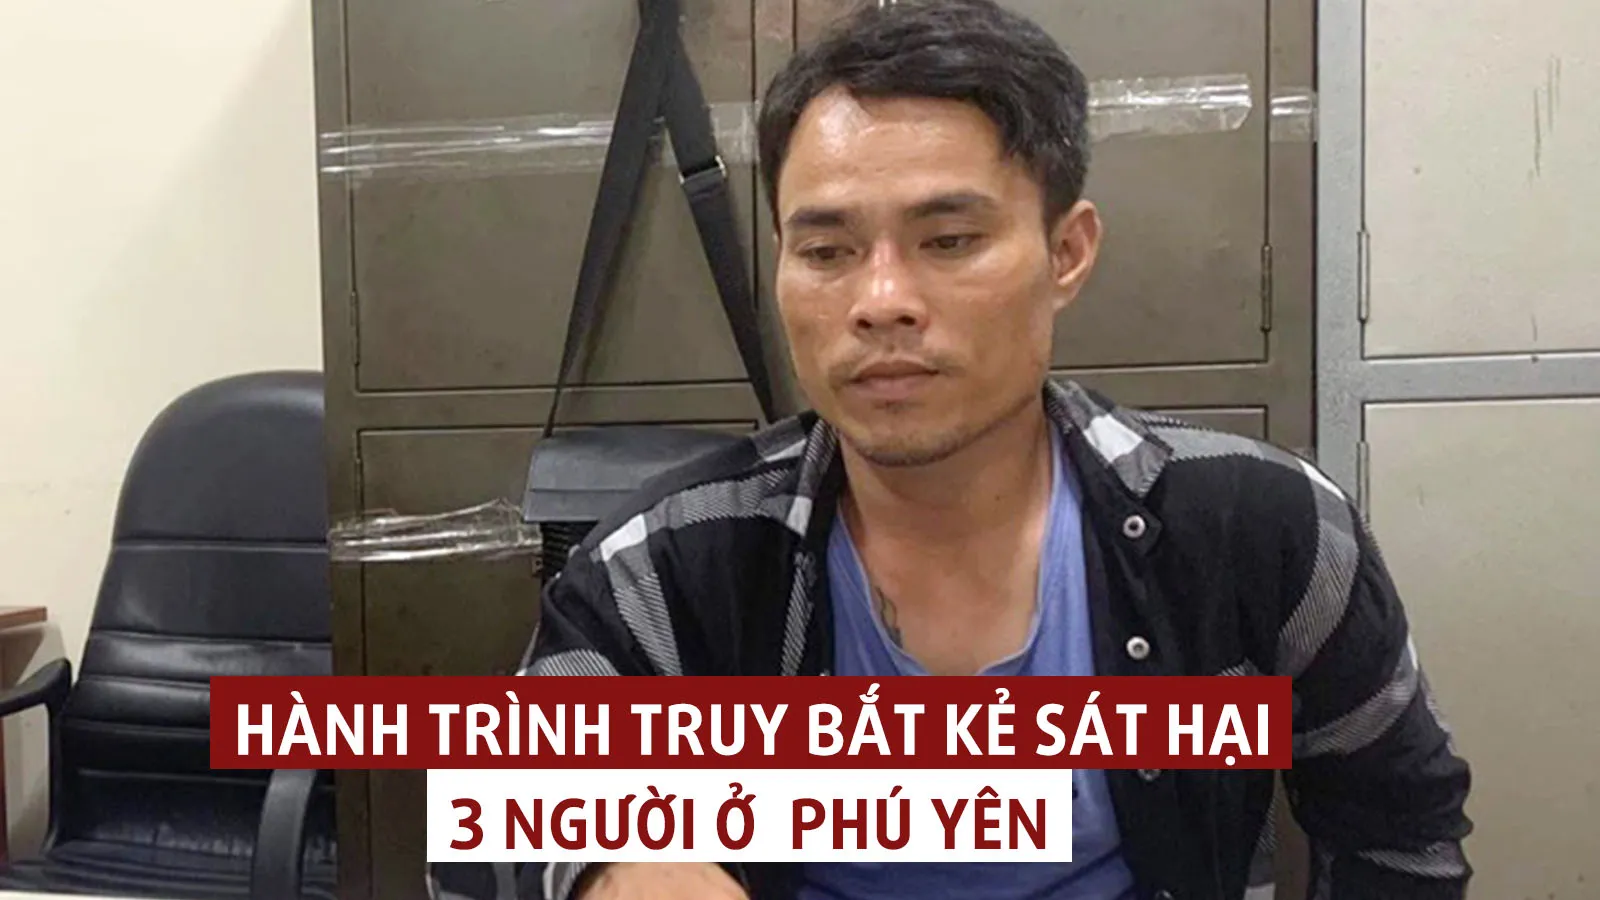 Tin nhanh trưa 30/5: Lời khai kẻ gây án trong vụ cả nhà bị giết ở Phú Yên